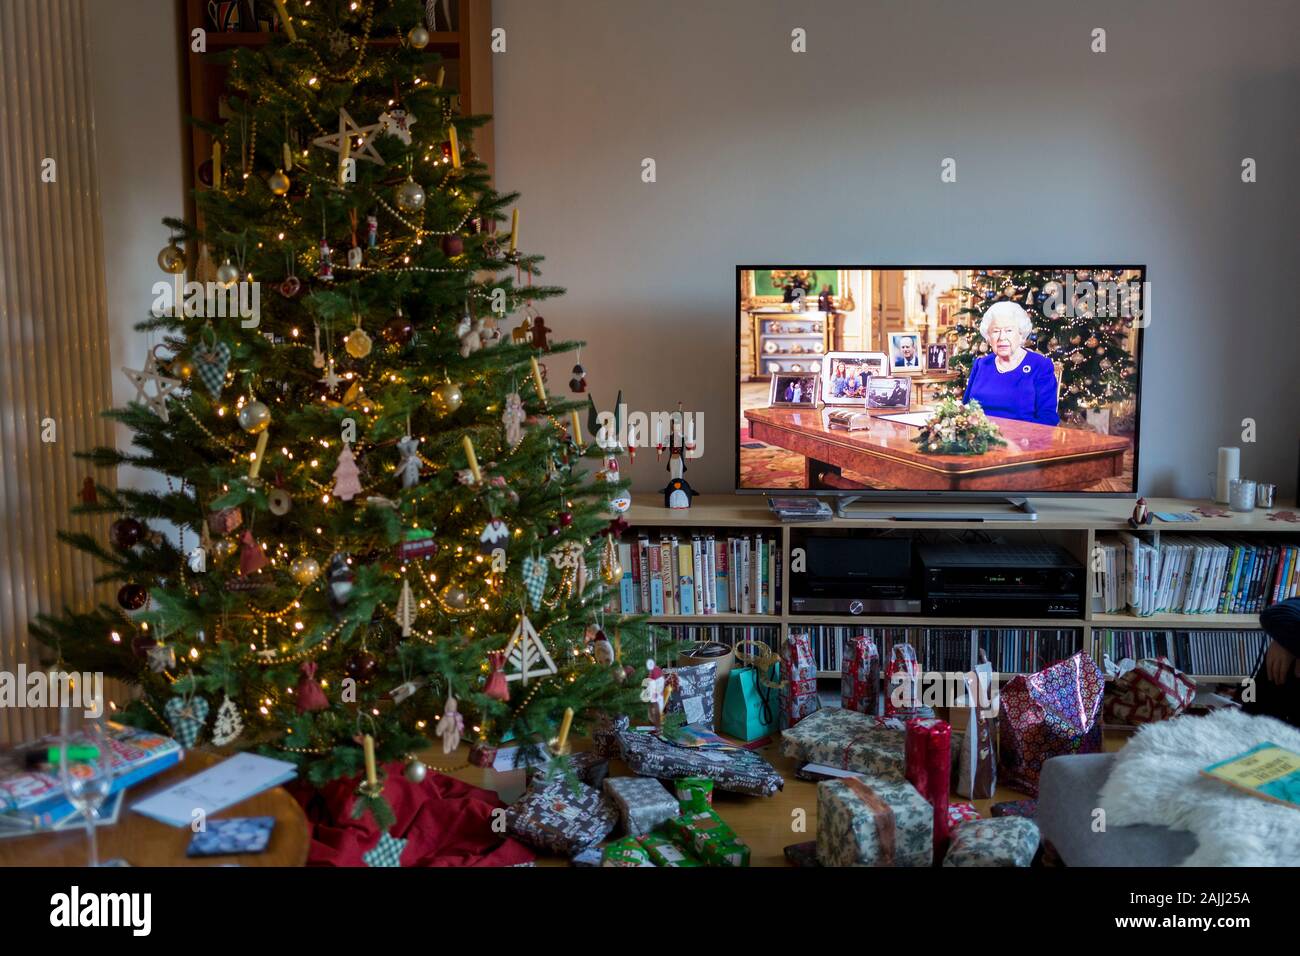 Weihnachtsgeschenke bleibt ungeöffnet unter einem Weihnachtsbaum während der Rede der Königin der Nation am Weihnachtstag, eine Tradition, die im Jahre 1932 begonnen und die erste Sendung im Fernsehen im Jahre 1957, am 25. Dezember 2019 in Bristol, England. Stockfoto